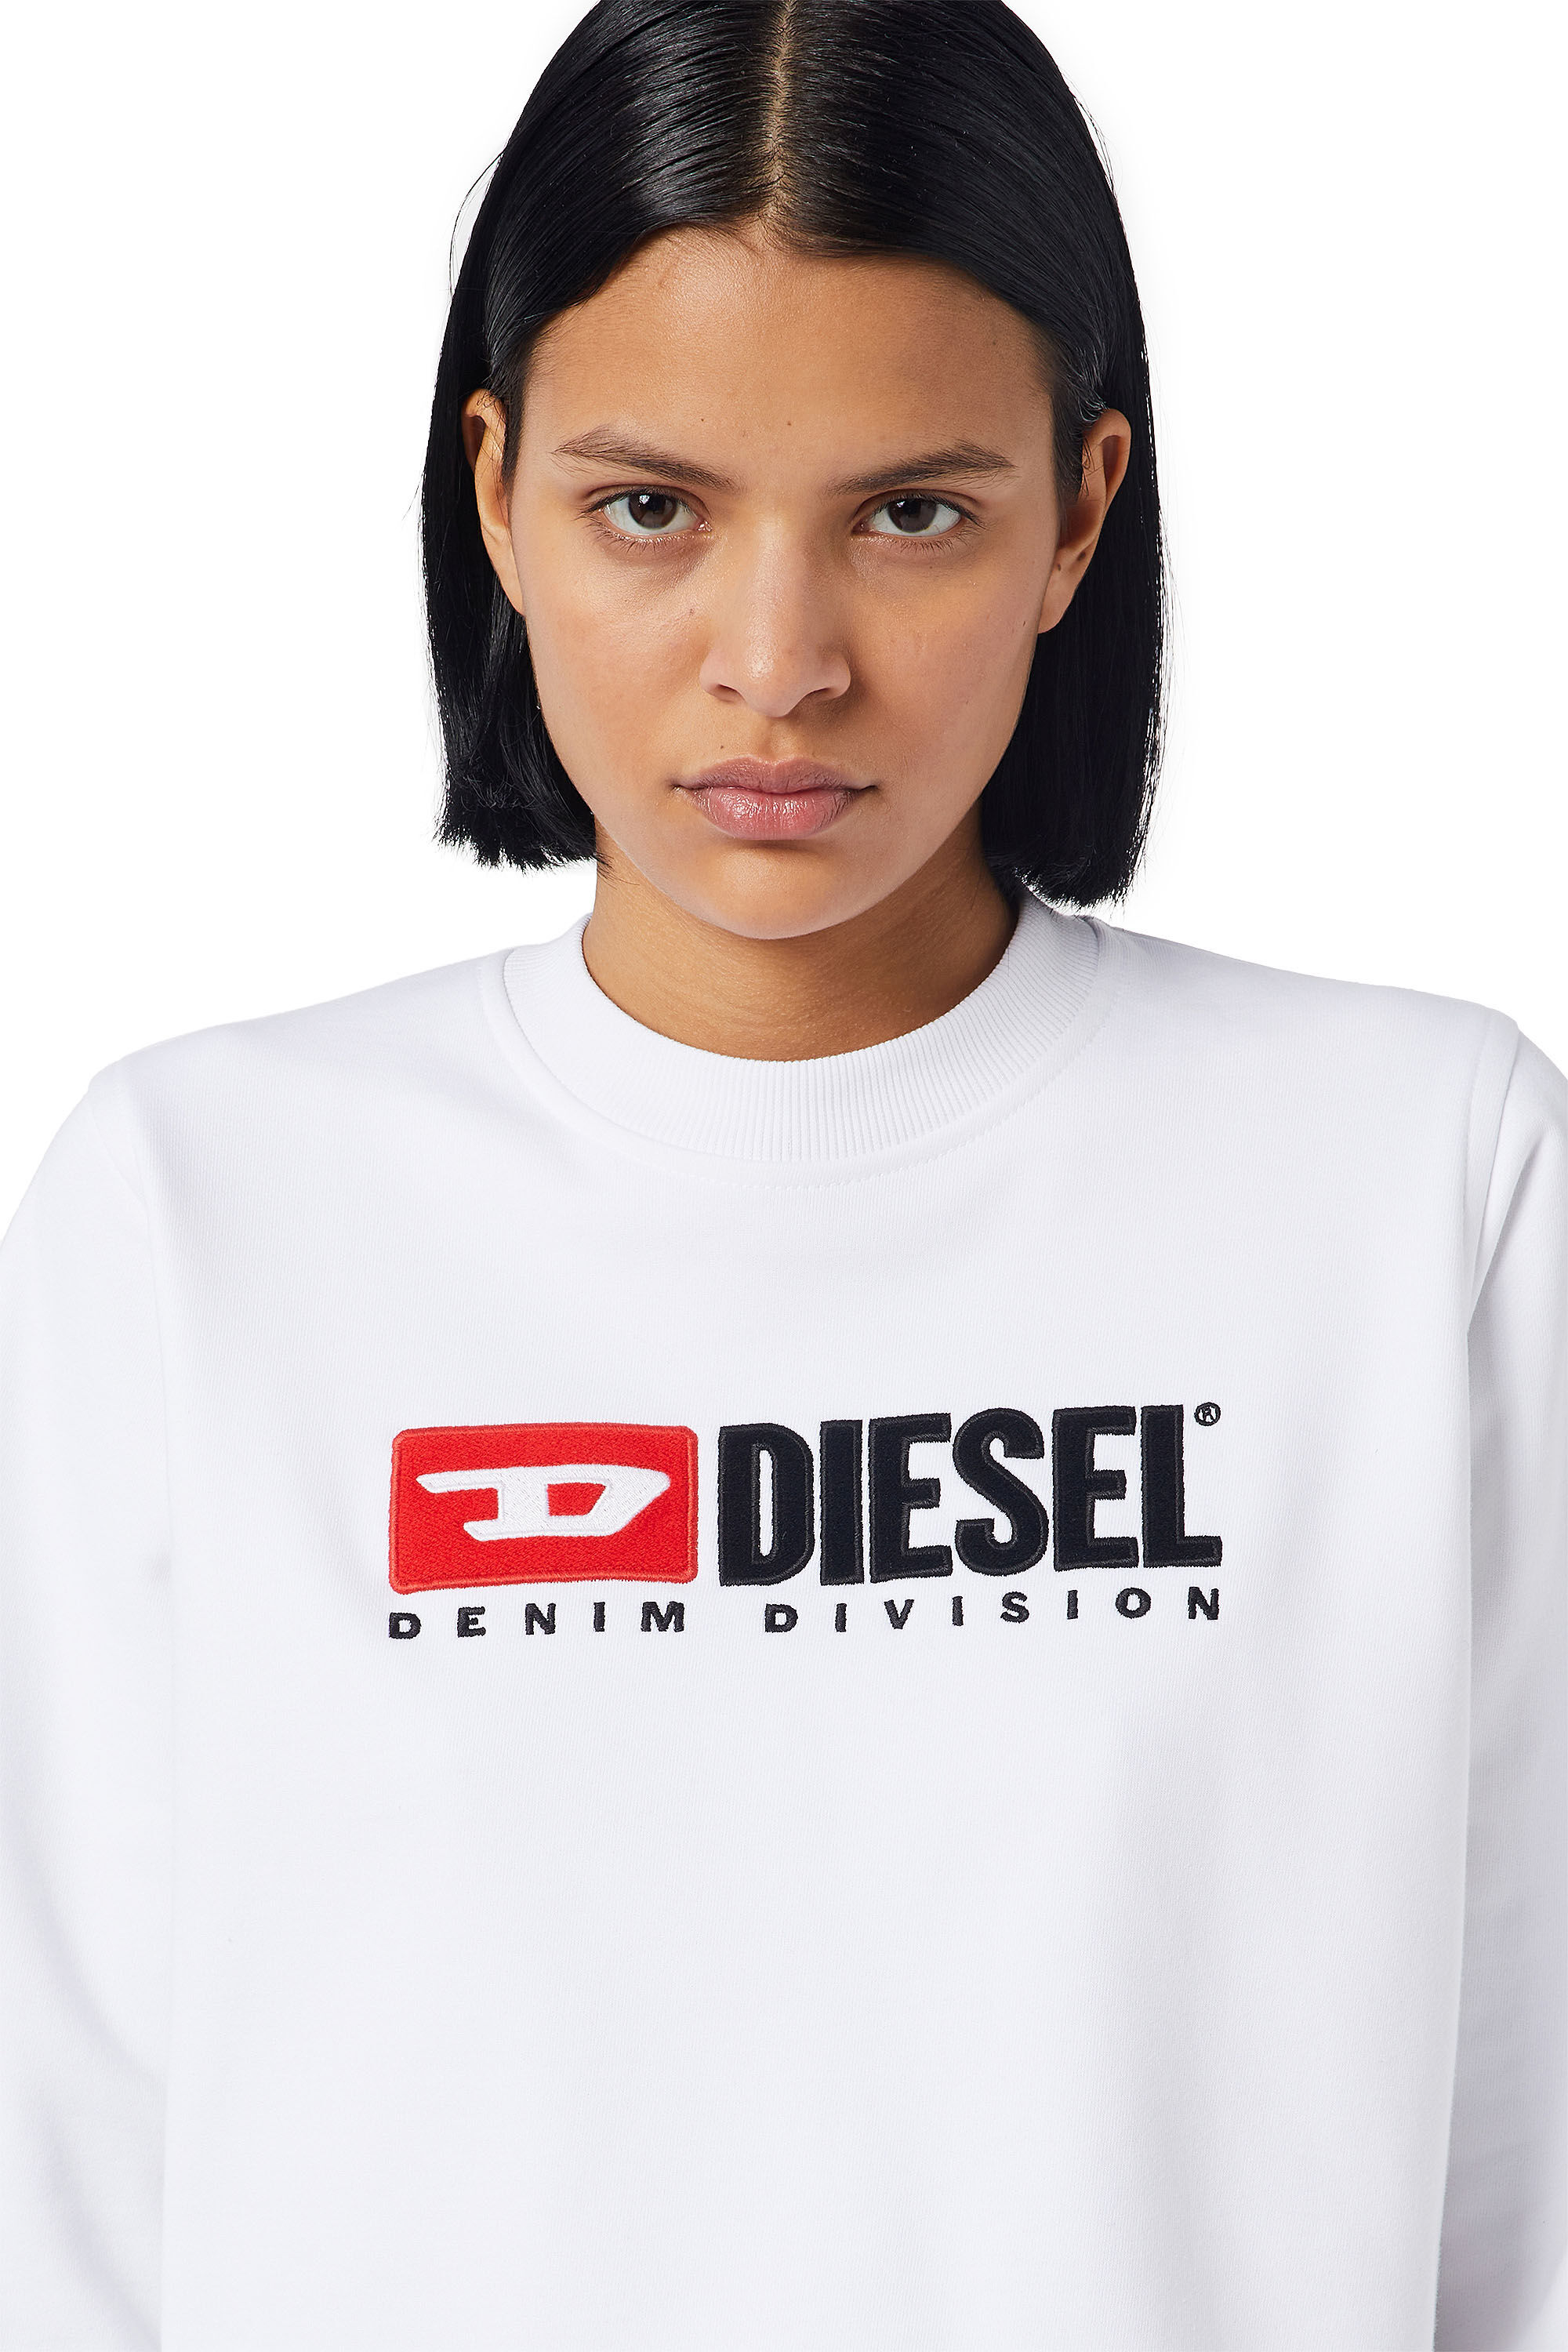 Diesel - F-REGGY-DIV, Bianco - Image 6